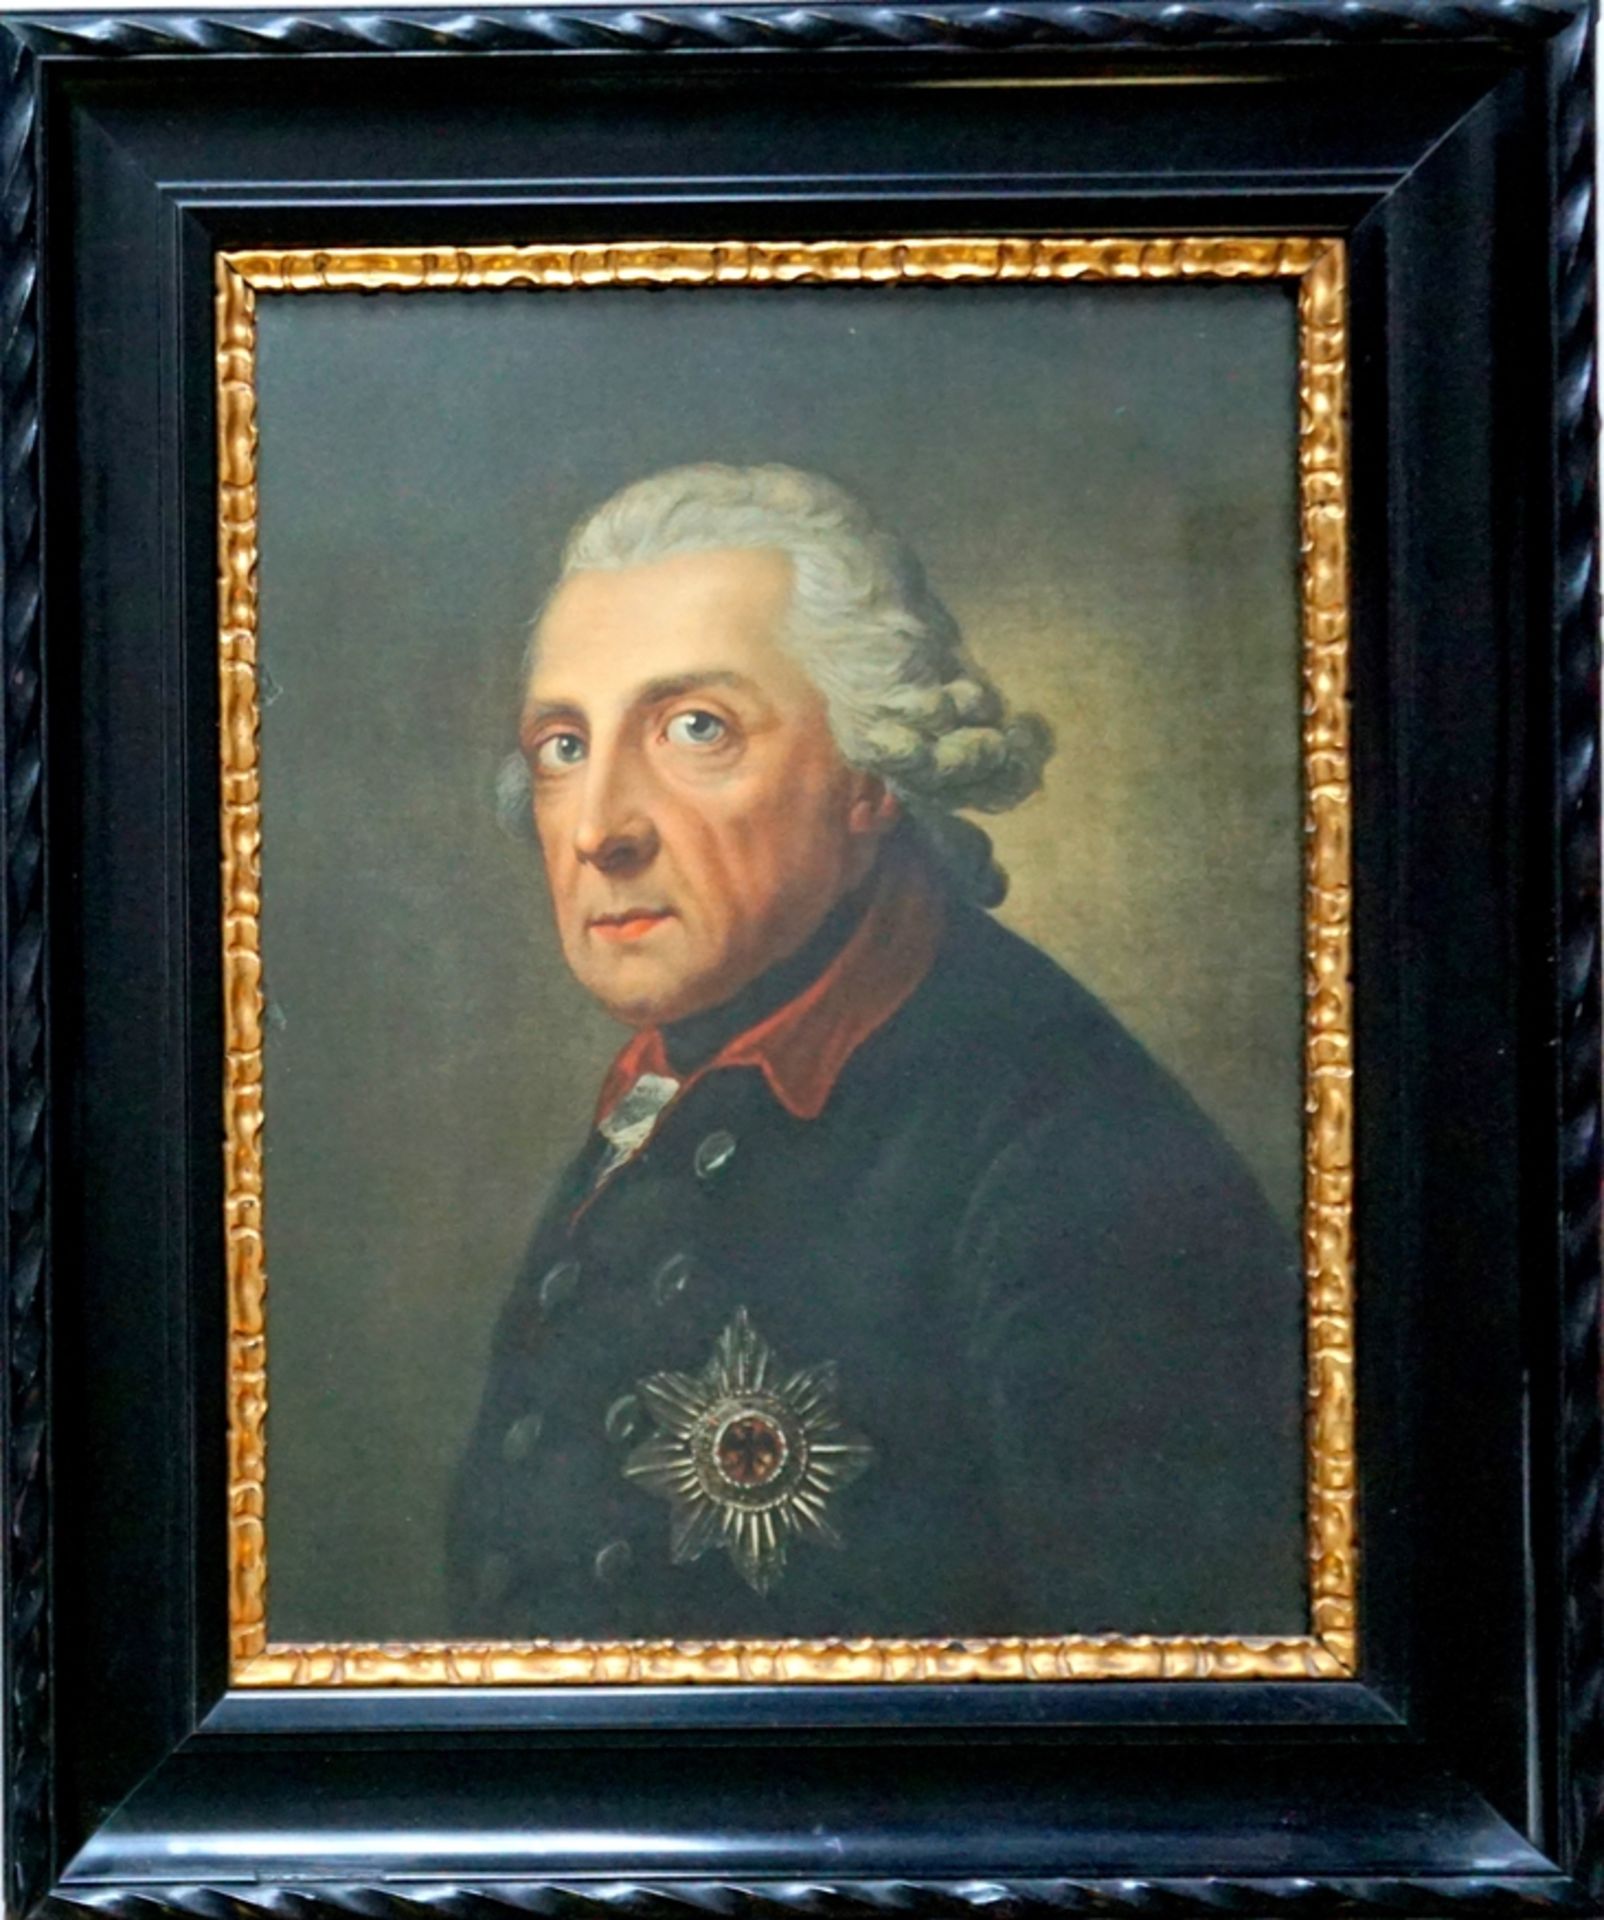 Farblithografie nach Anton Graff, "Friedrich II. (der Große)", spätes 19. Jh.